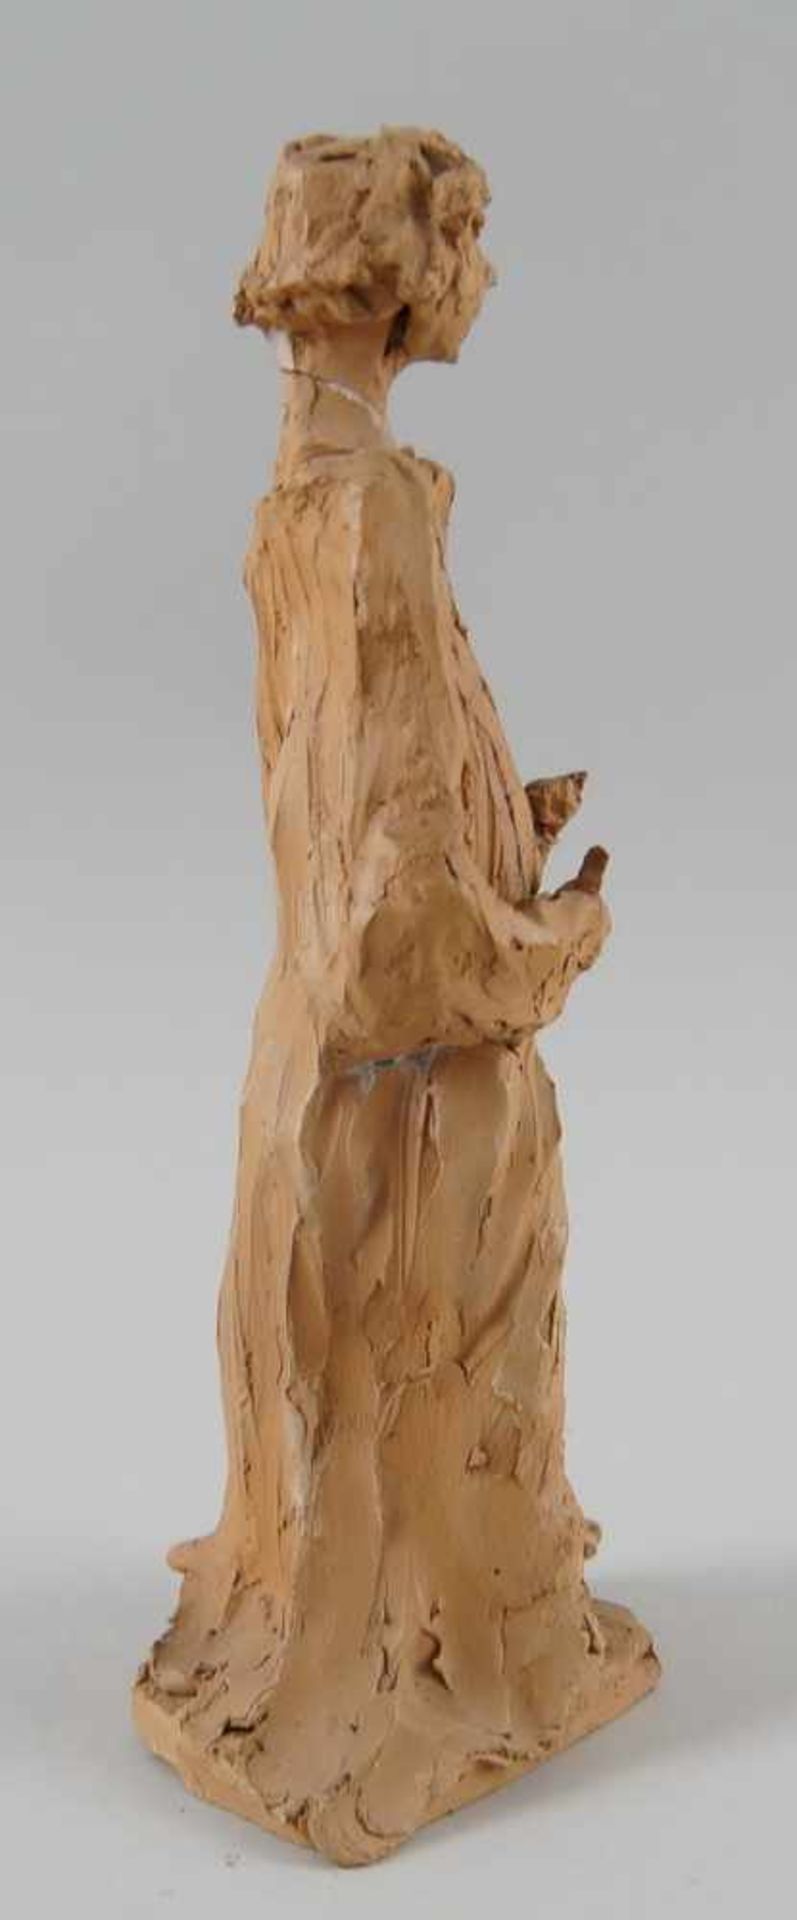 Francesco Messino Skulptur aus Ton, besch., H 25 cm- - -24.00 % buyer's premium on the hammer - Bild 5 aus 7